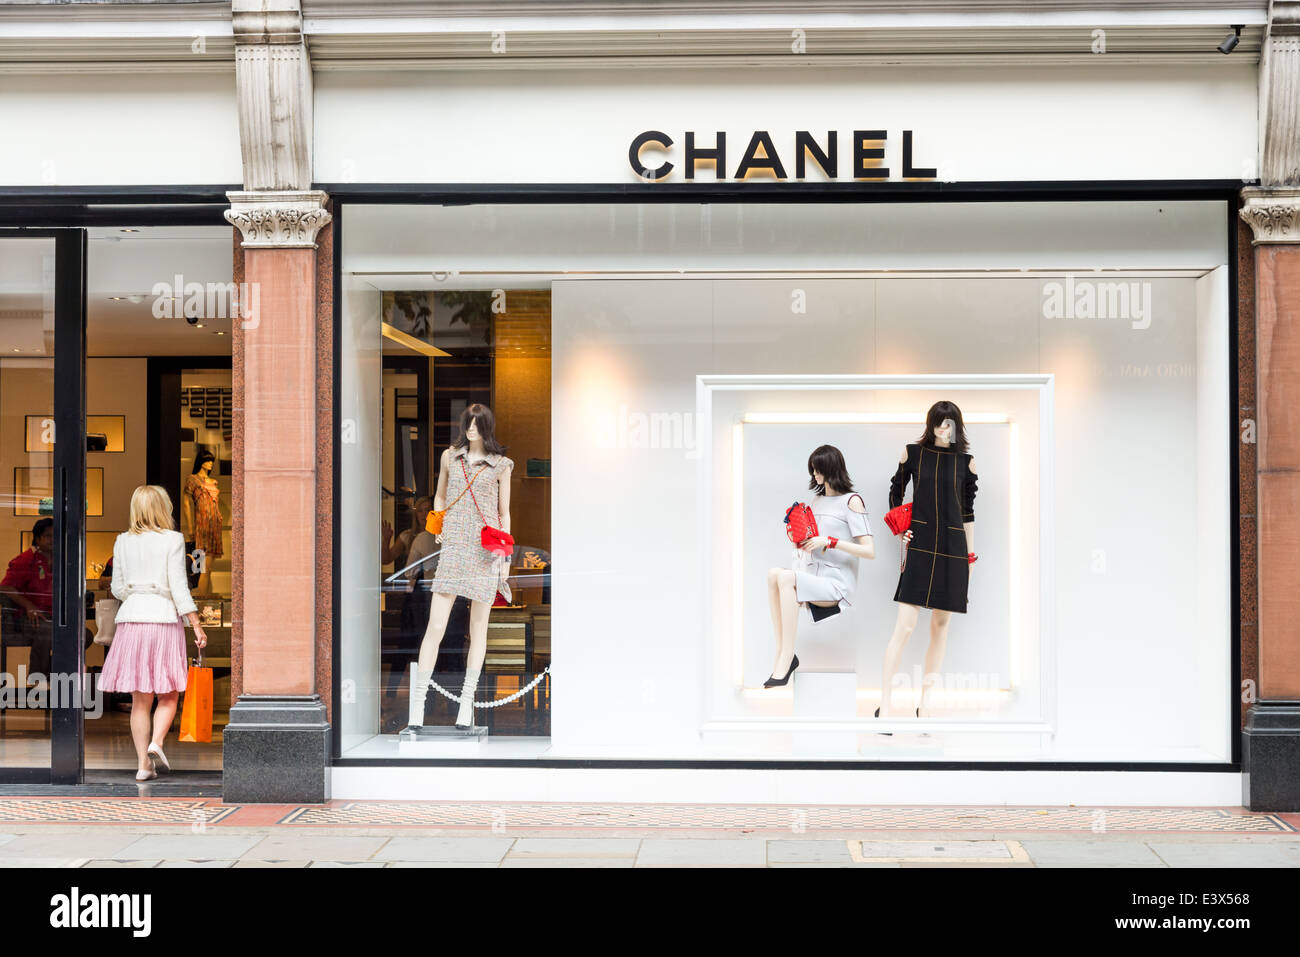 Chanel luxury designer clothes shop on Sloane Street, London, England, UK  Stock Photo - Alamy